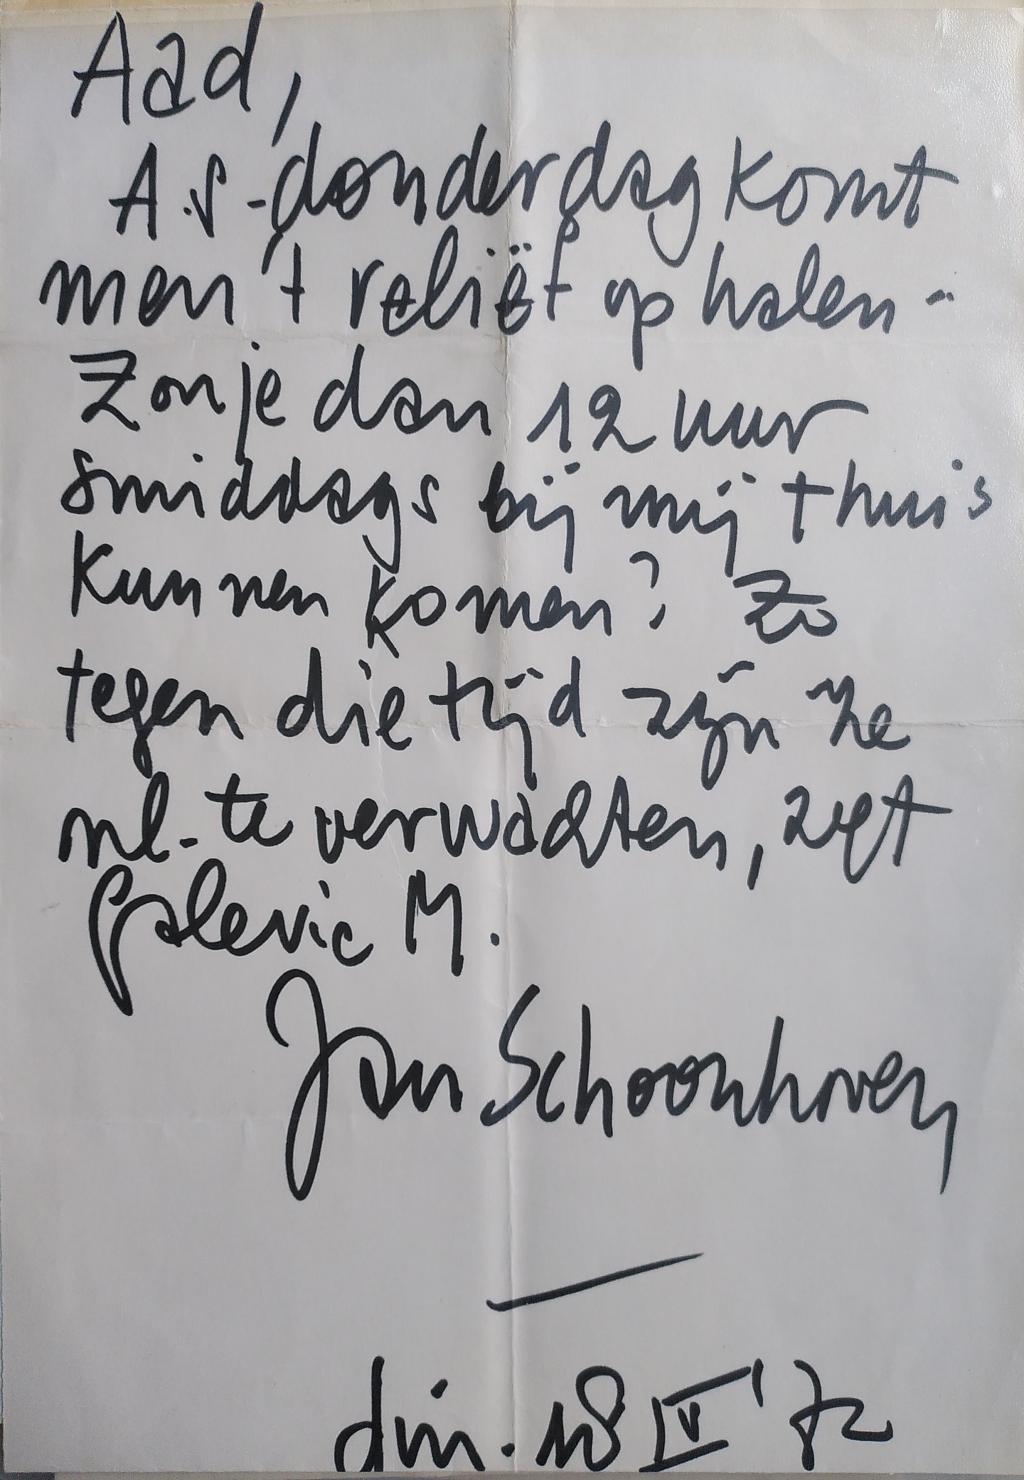 Briefje van Jan Schoonhoven aan Aad in ’t Veld